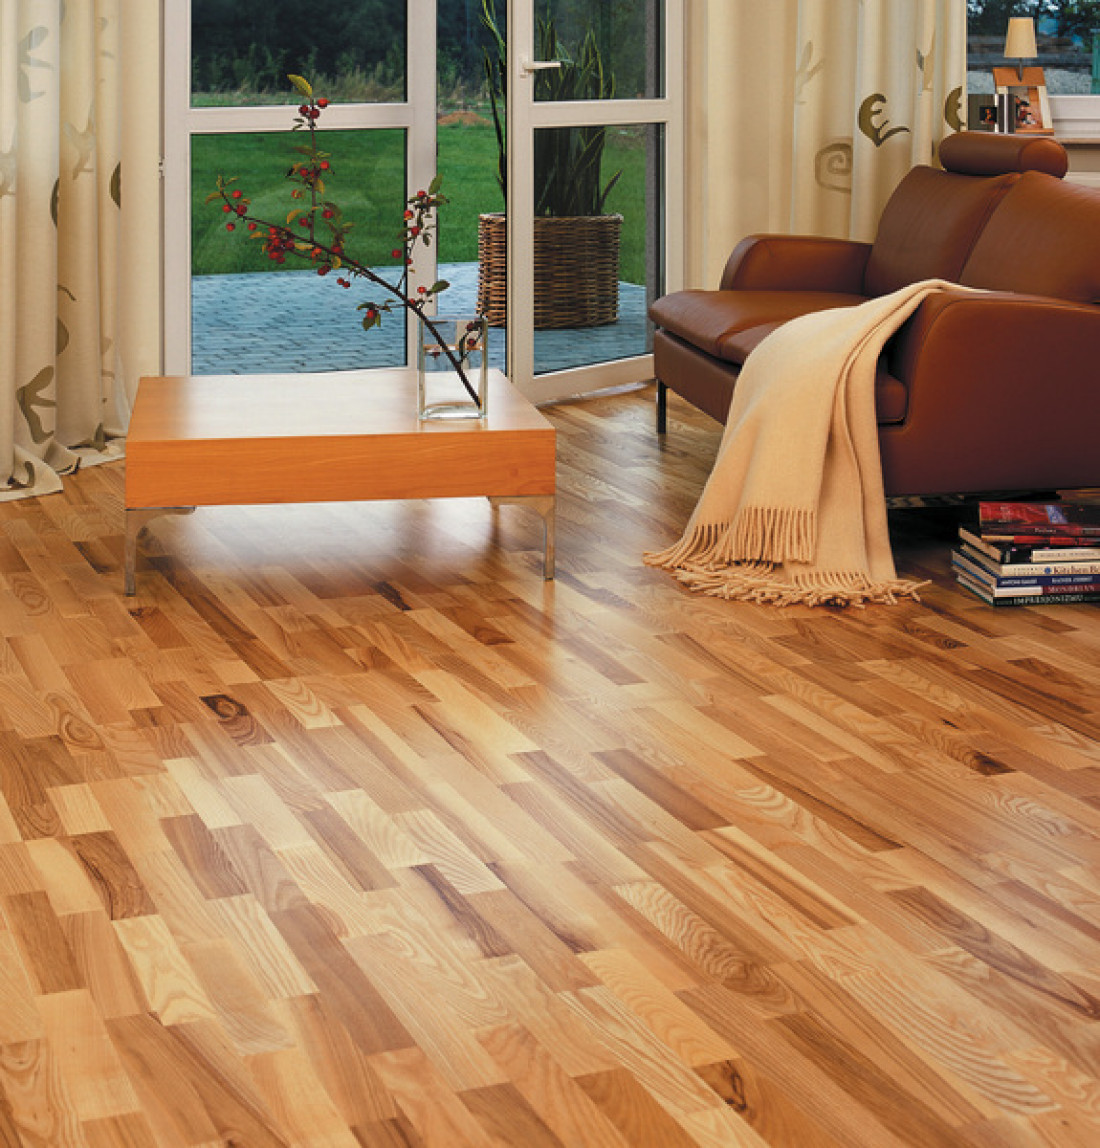 Jaka podłoga nad ogrzewanie podłogowe - panele laminowane czy wyroby drewniane?